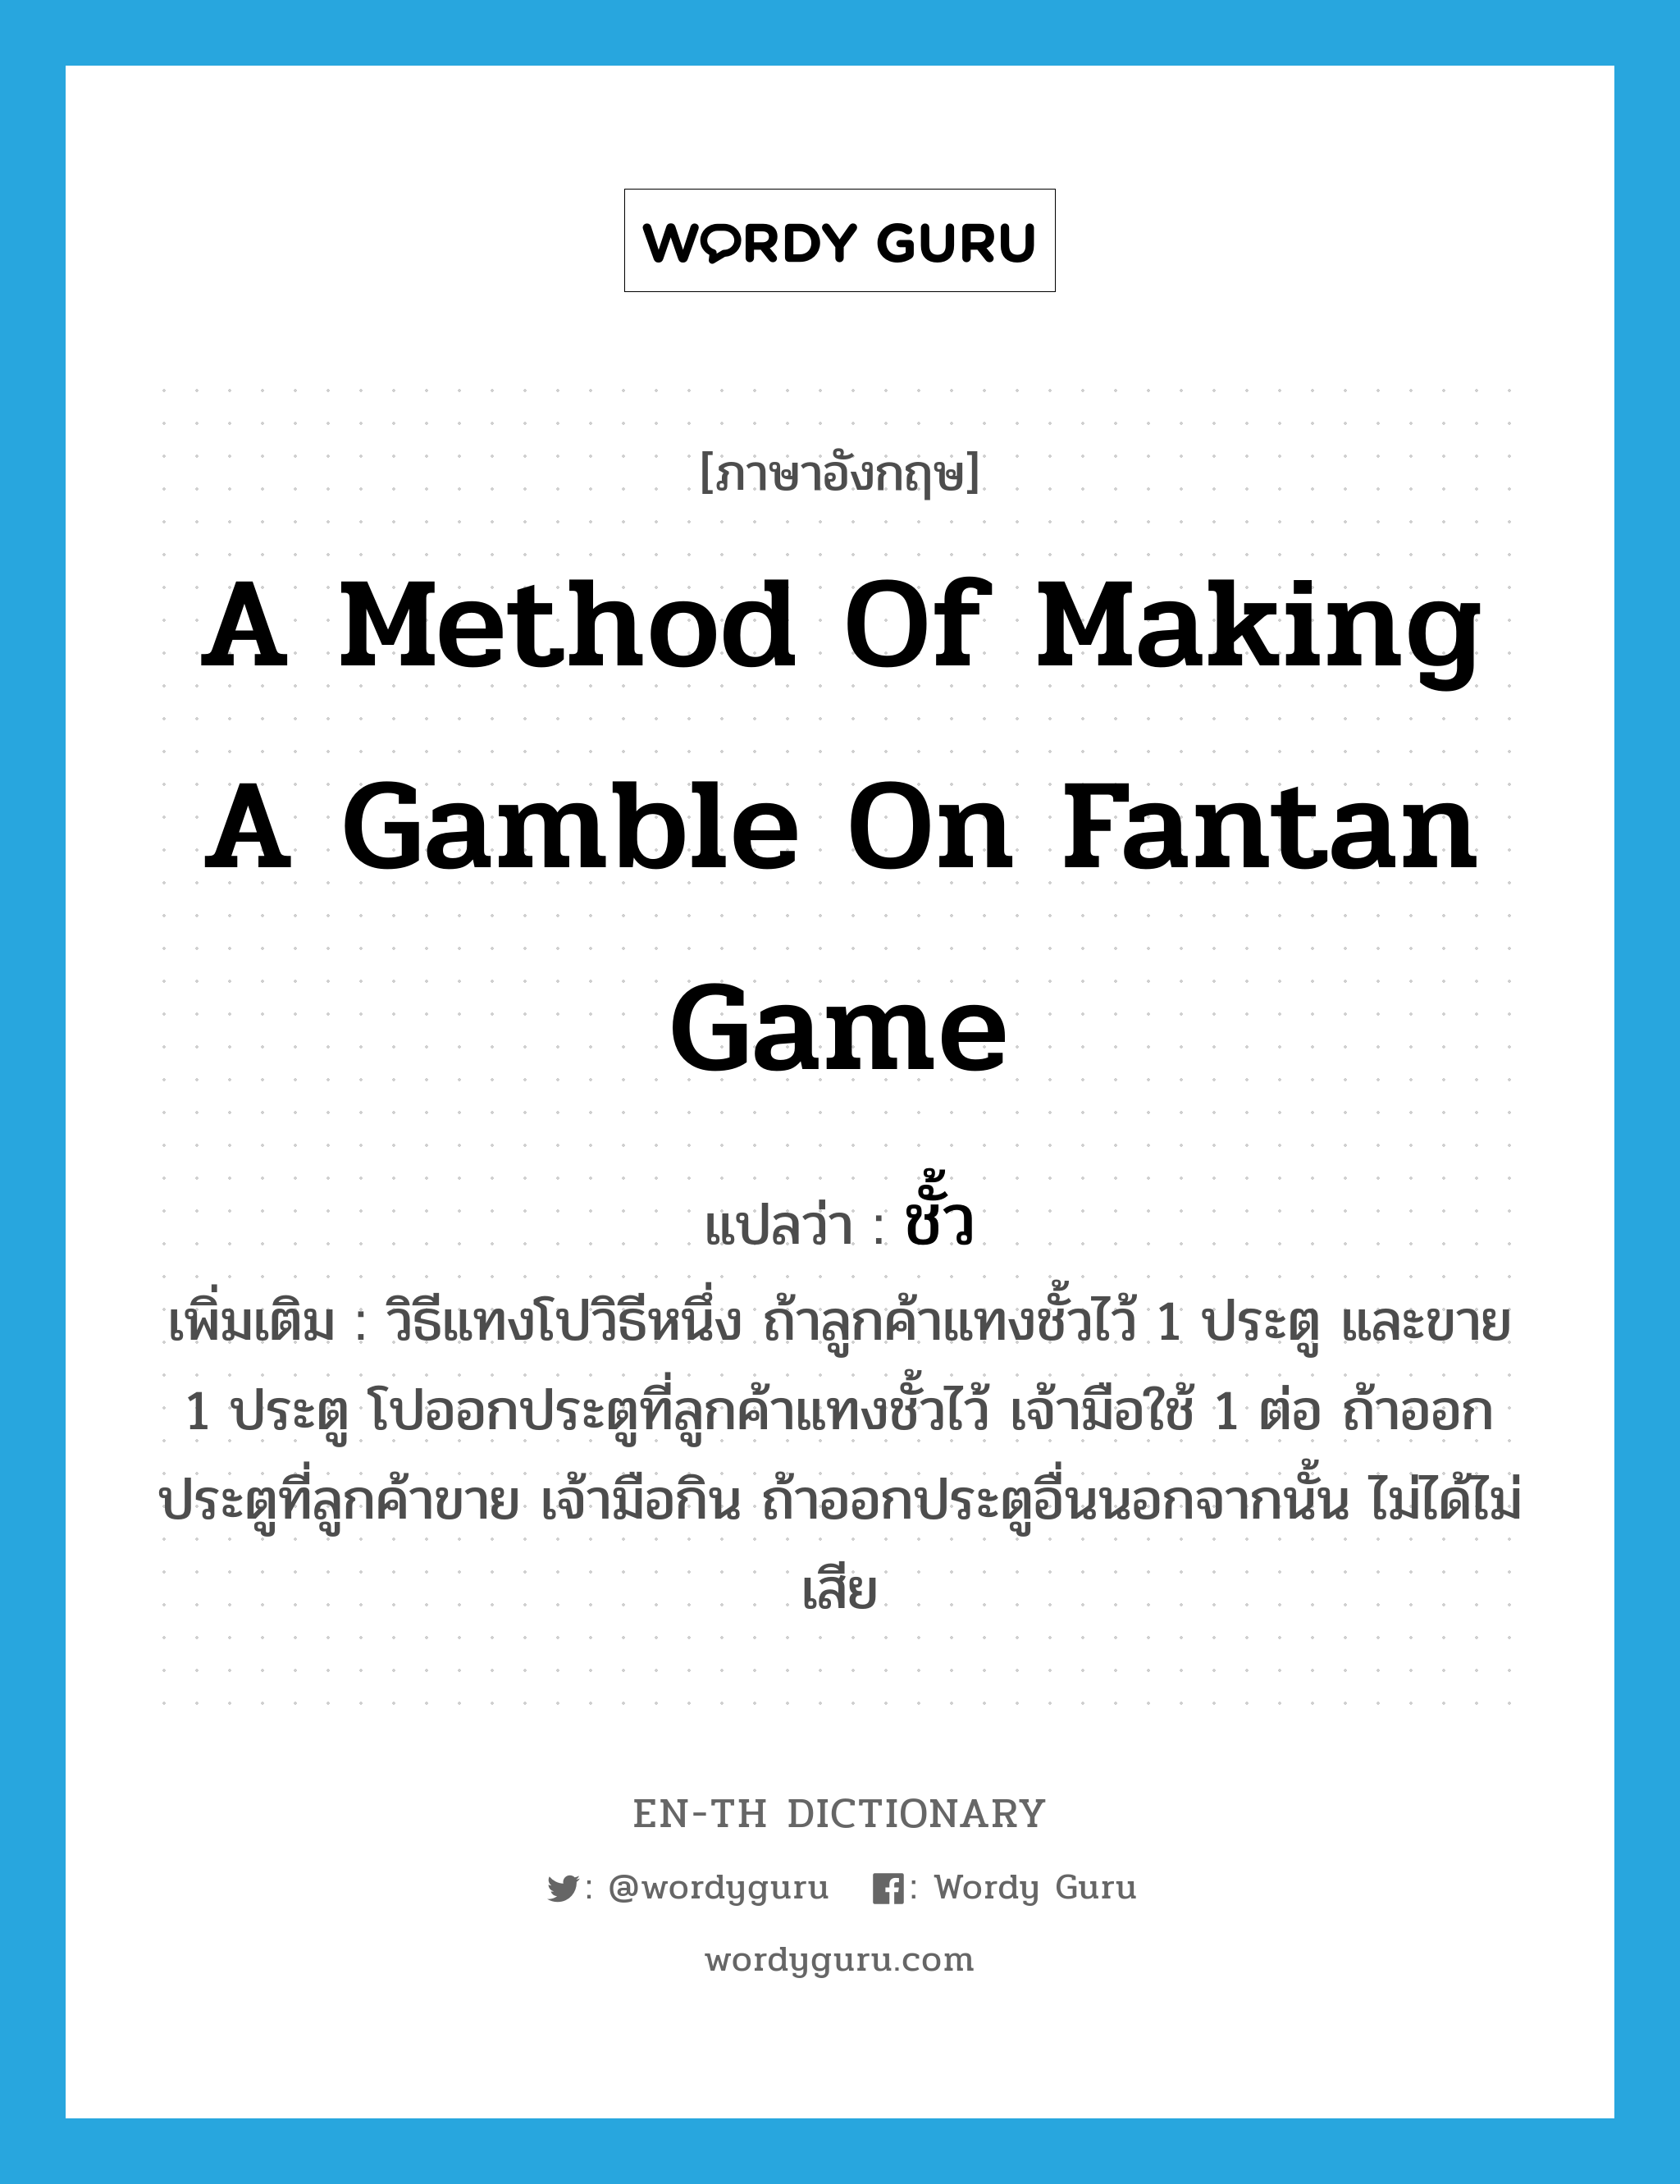 a method of making a gamble on fantan game แปลว่า? คำศัพท์ในกลุ่มประเภท N, คำศัพท์ภาษาอังกฤษ a method of making a gamble on fantan game แปลว่า ชั้ว ประเภท N เพิ่มเติม วิธีแทงโปวิธีหนึ่ง ถ้าลูกค้าแทงชั้วไว้ 1 ประตู และขาย 1 ประตู โปออกประตูที่ลูกค้าแทงชั้วไว้ เจ้ามือใช้ 1 ต่อ ถ้าออกประตูที่ลูกค้าขาย เจ้ามือกิน ถ้าออกประตูอื่นนอกจากนั้น ไม่ได้ไม่เสีย หมวด N